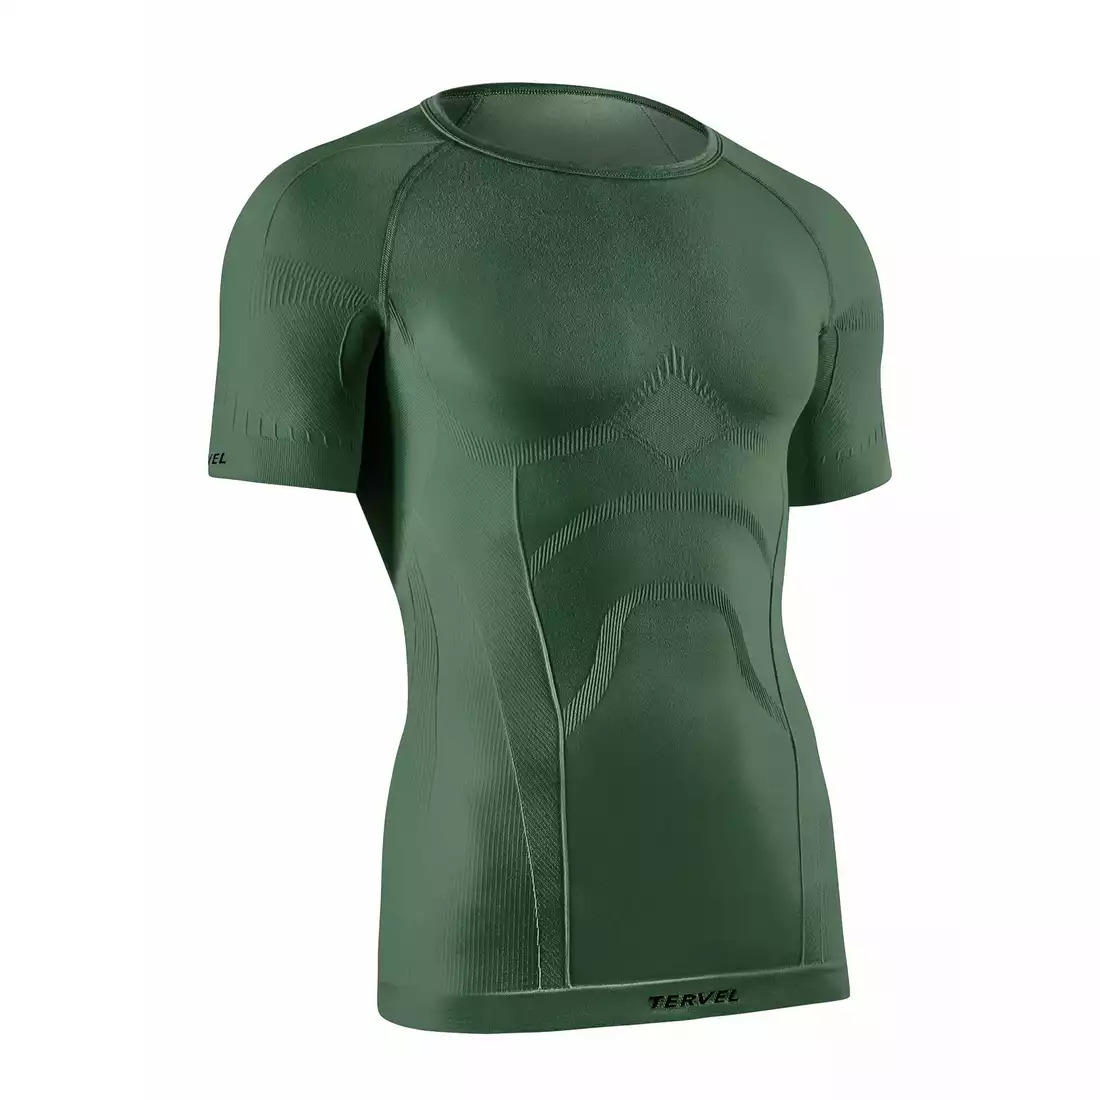 TERVEL COMFORTLINE 1102 - męska koszulka termoaktywna, krótki rękaw, kolor: Military (zielony)